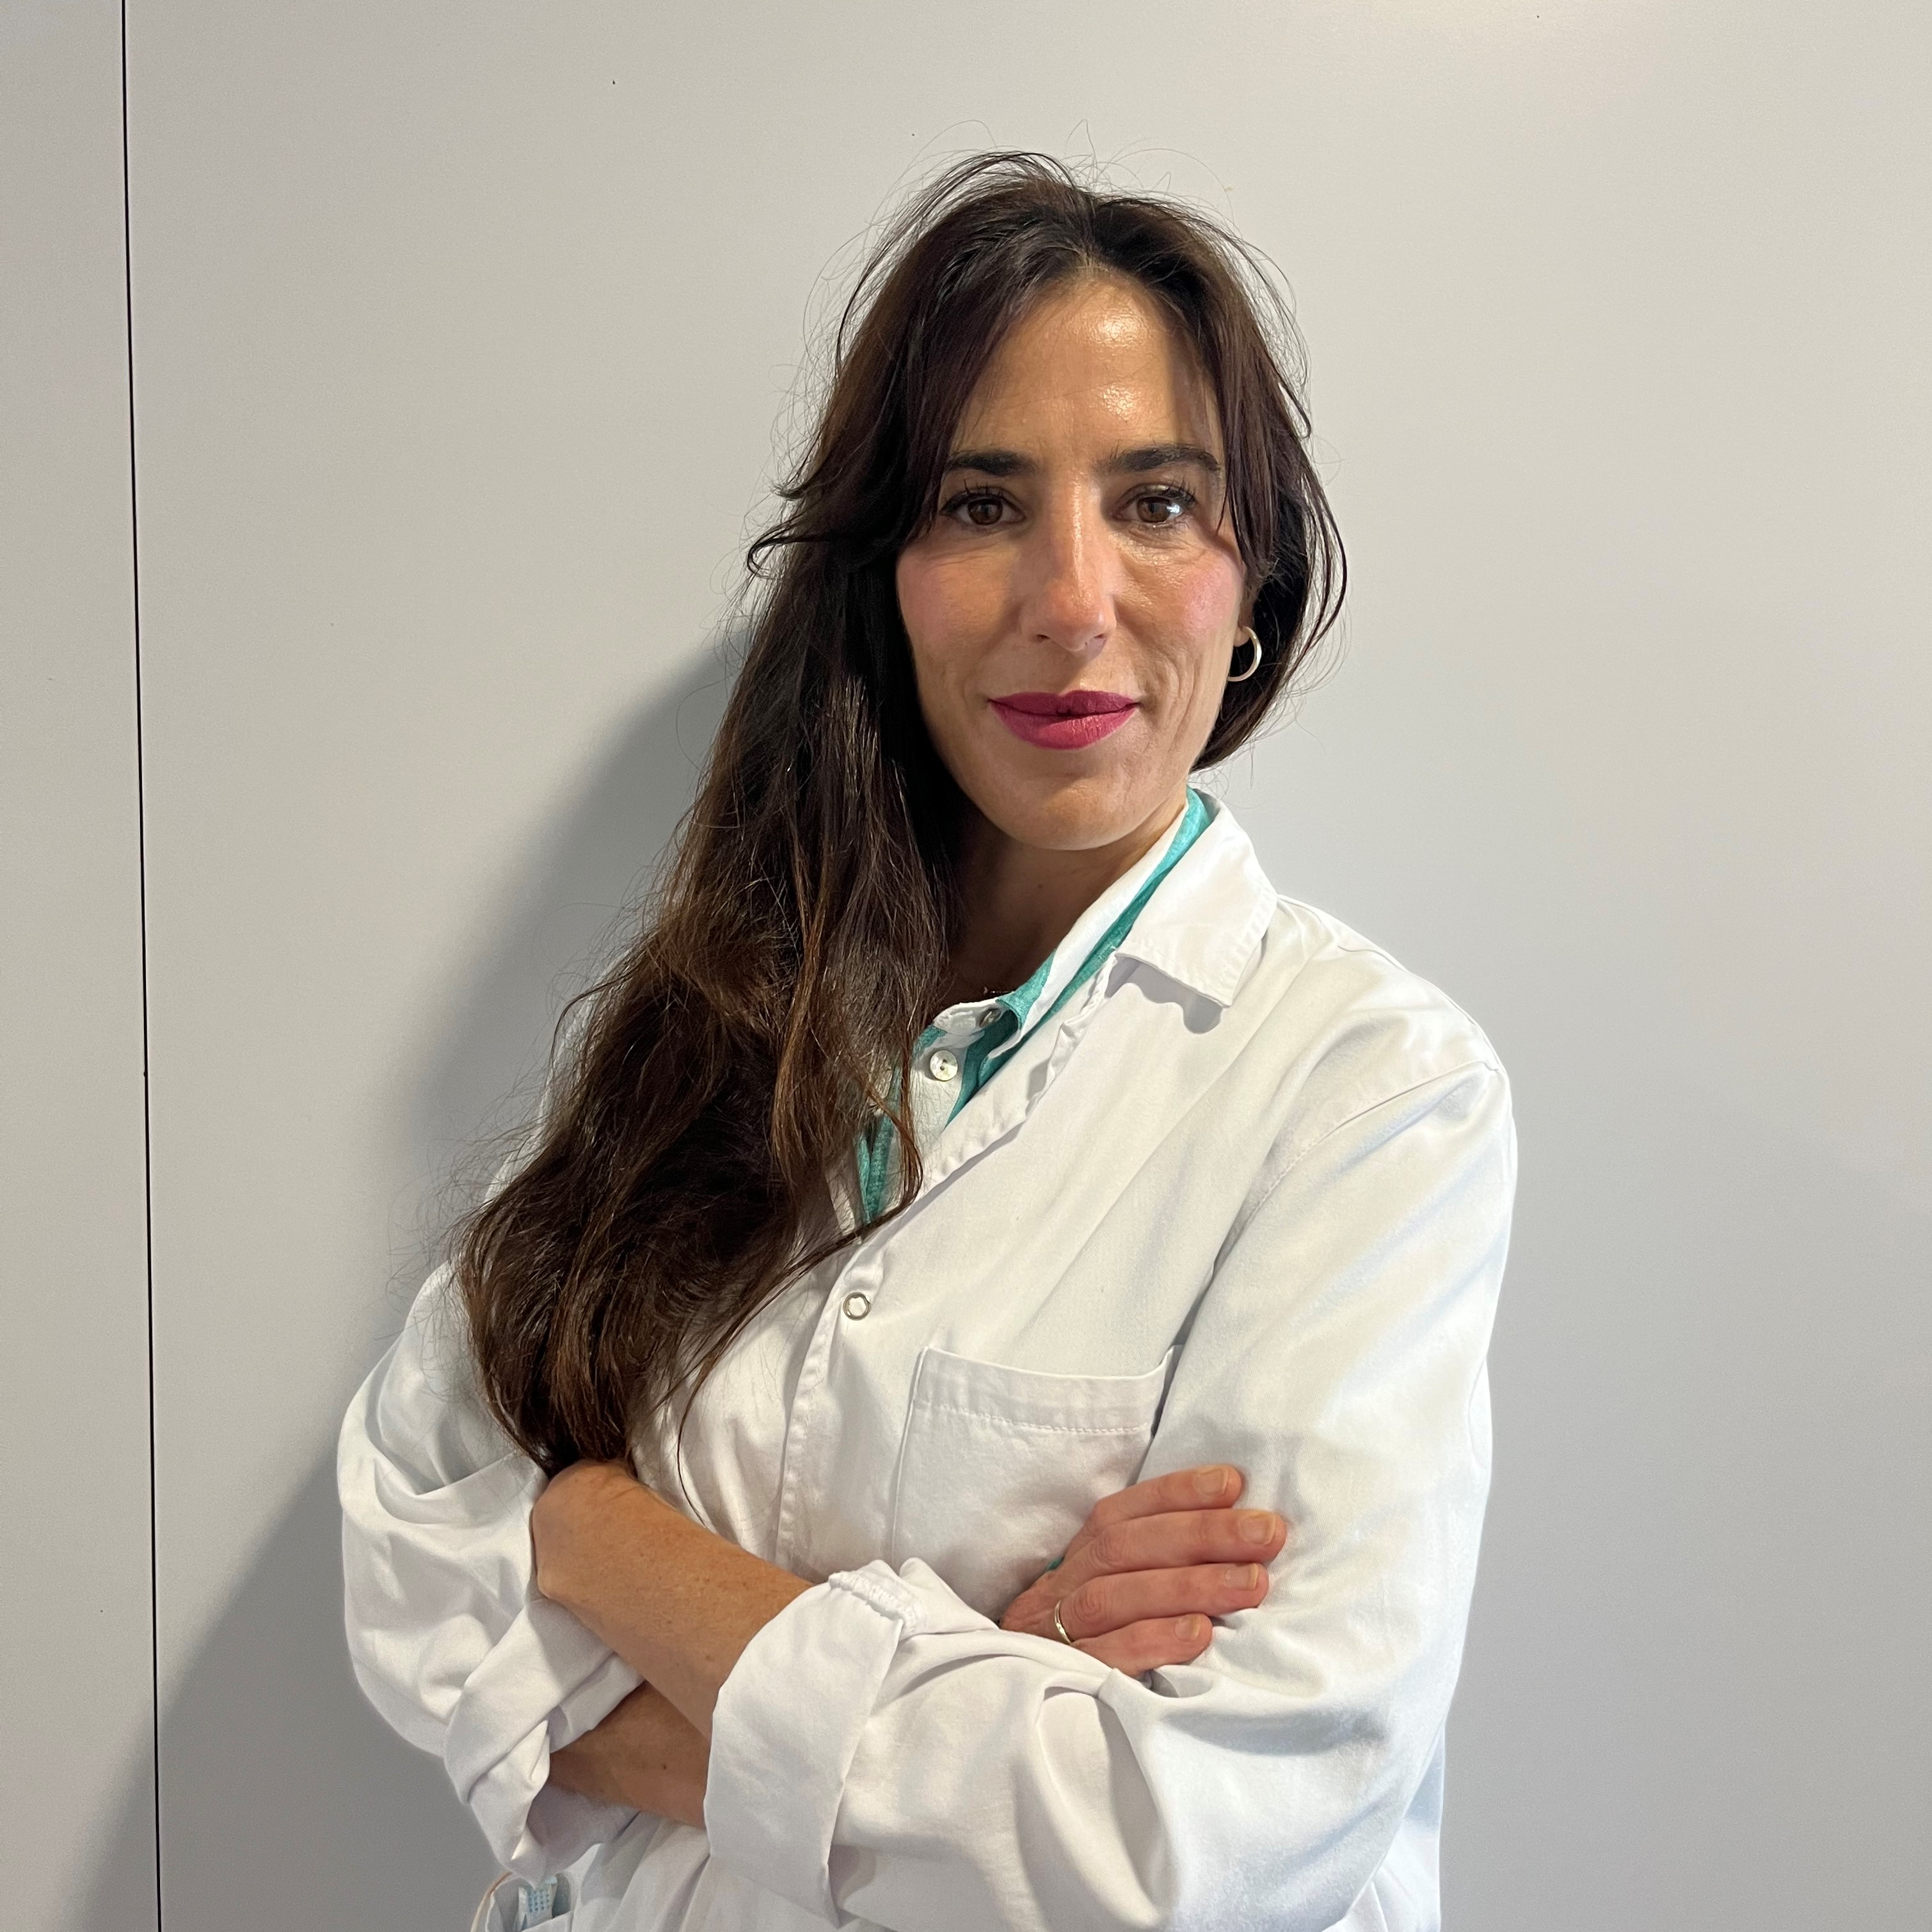 Dra. Irati Allende, servicio de Dermatología del Hospital Quirónsalud Bizkaia